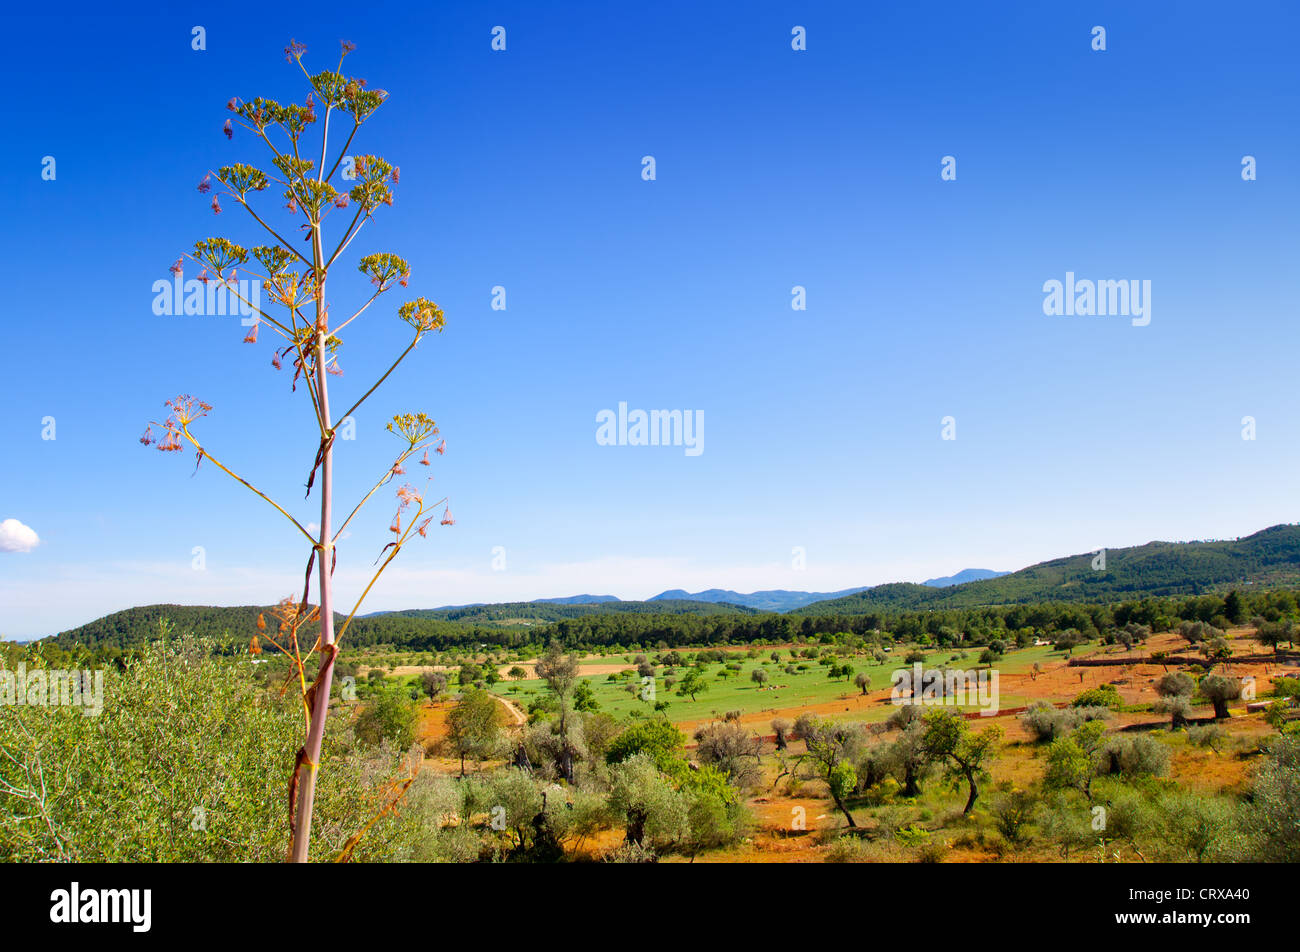 Isola di Ibiza paesaggio con campi di agricoltura su rosso argilla del suolo Foto Stock